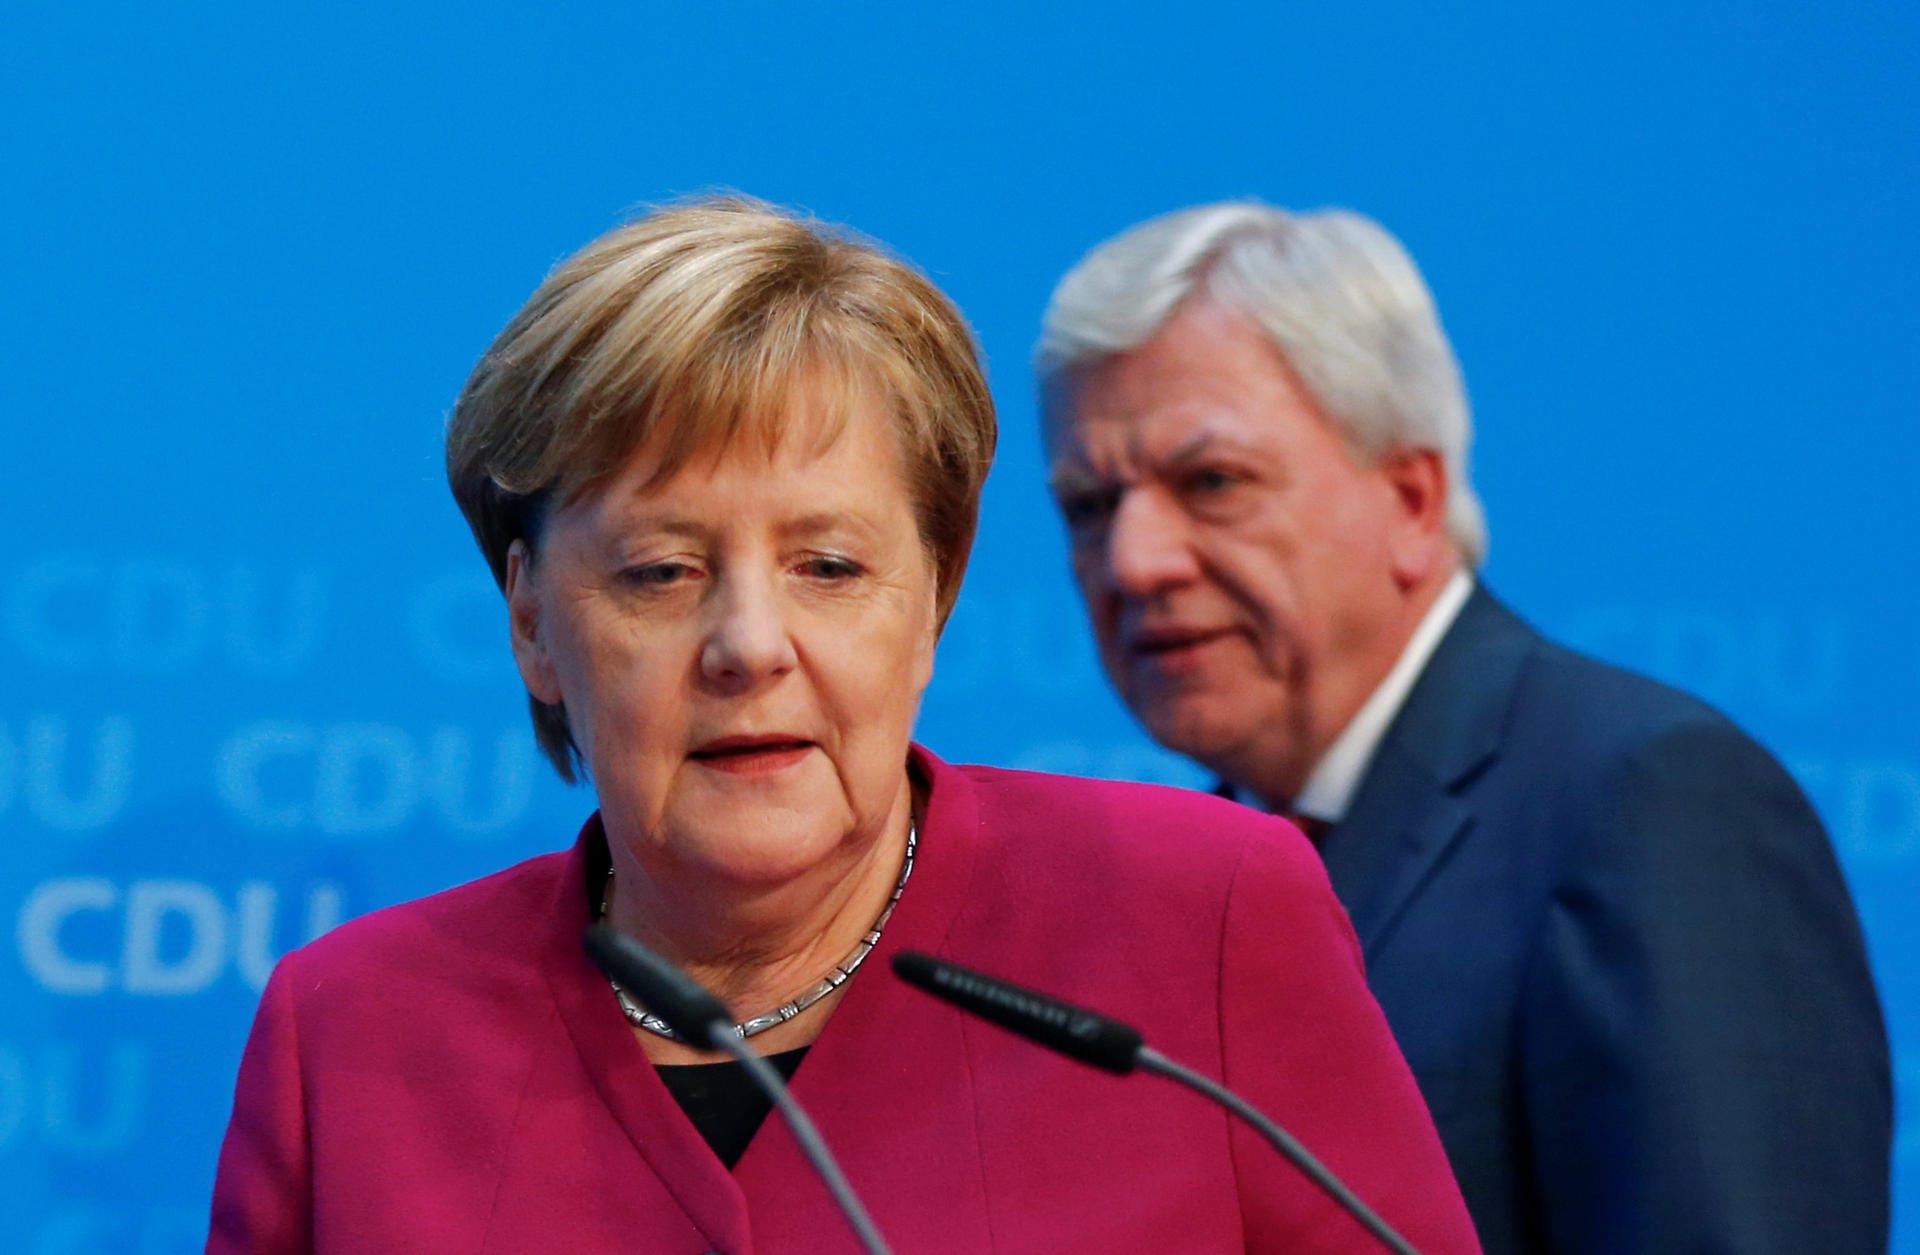 Nach den Verlusten der Union bei den Landtagswahlen beginnt nun der Abschied. Neben dem CDU-Vorsitz möchte Merkel zum Ende der Legislatur auch als Kanzlerin zurücktreten. Danach strebt sie keine politischen Ämter mehr an. Es wird das Ende einer langen und erfolgreichen politischen Karriere.